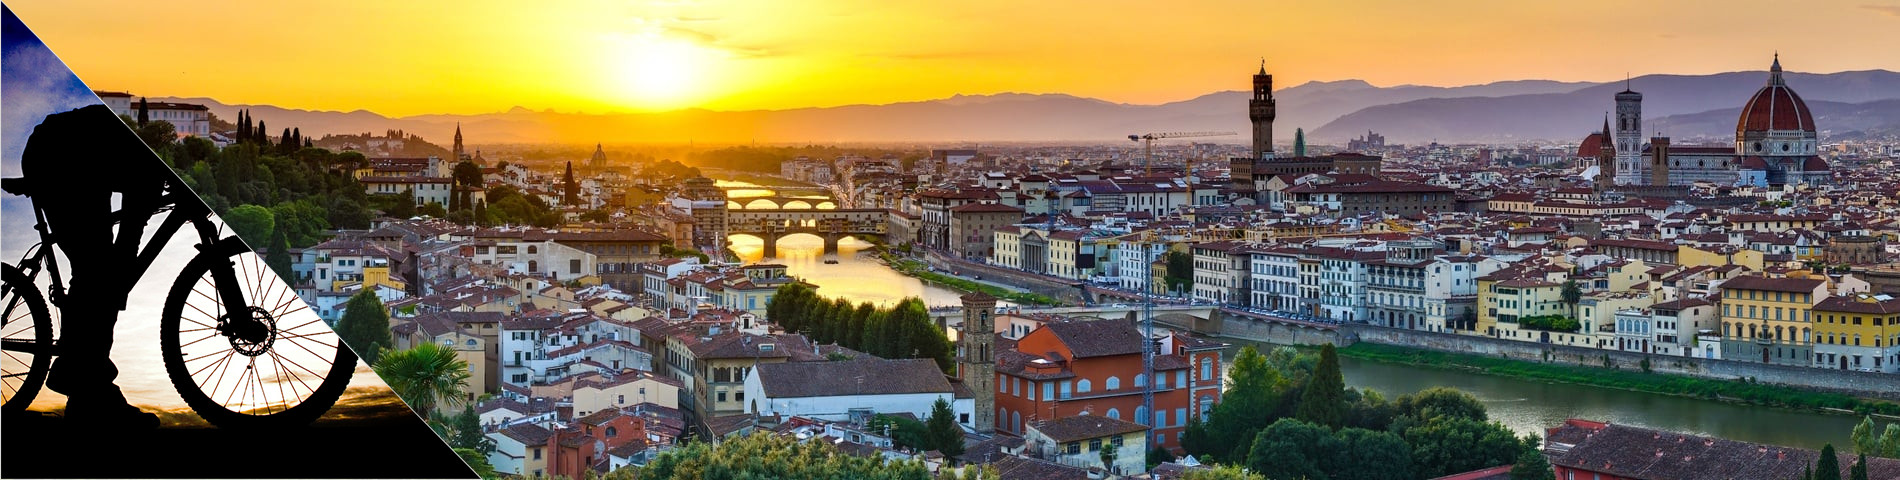 Florence - Italien & VTT